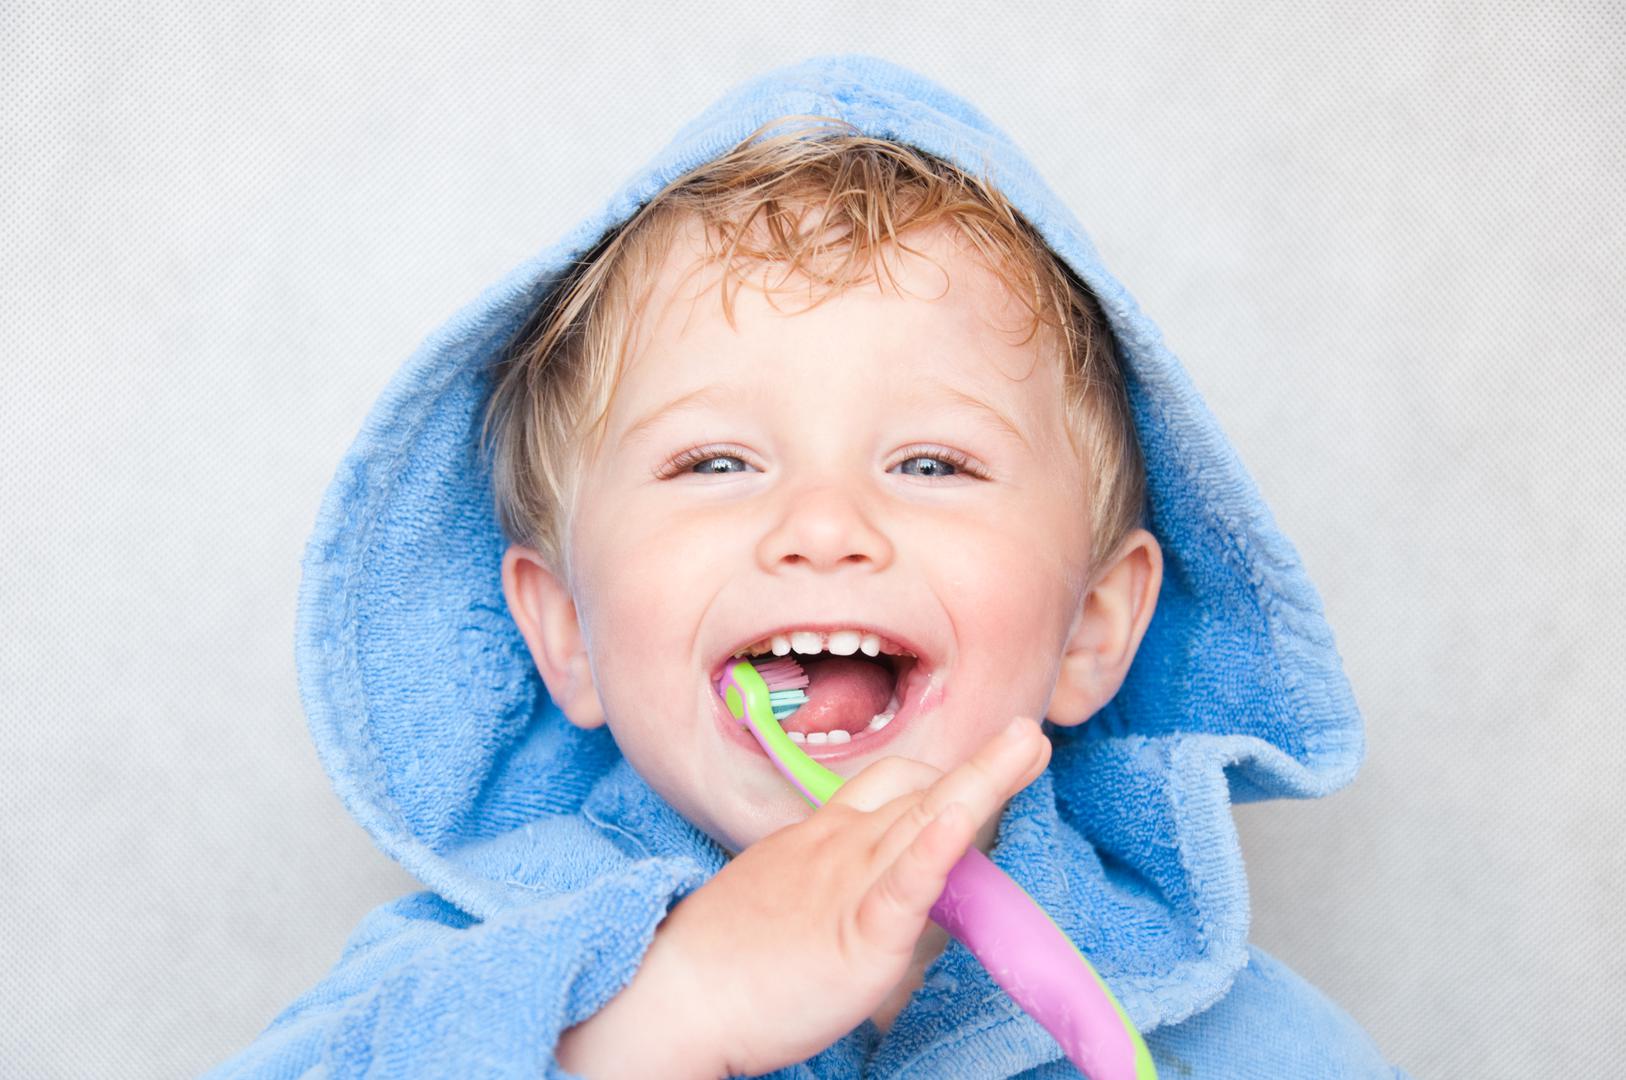 Mliječni zubi su bitni: 'Mnogi ljudi pretpostavljaju da mliječni zubi nisu bitni i ne zahtijevaju toliko brige', kaže dr. Jethwa, 'Ali, nebriga o njima može dovesti do karijesa i bolesti desni'. Počnite djeci prati zube čim izniknu, obično oko šest mjeseci.